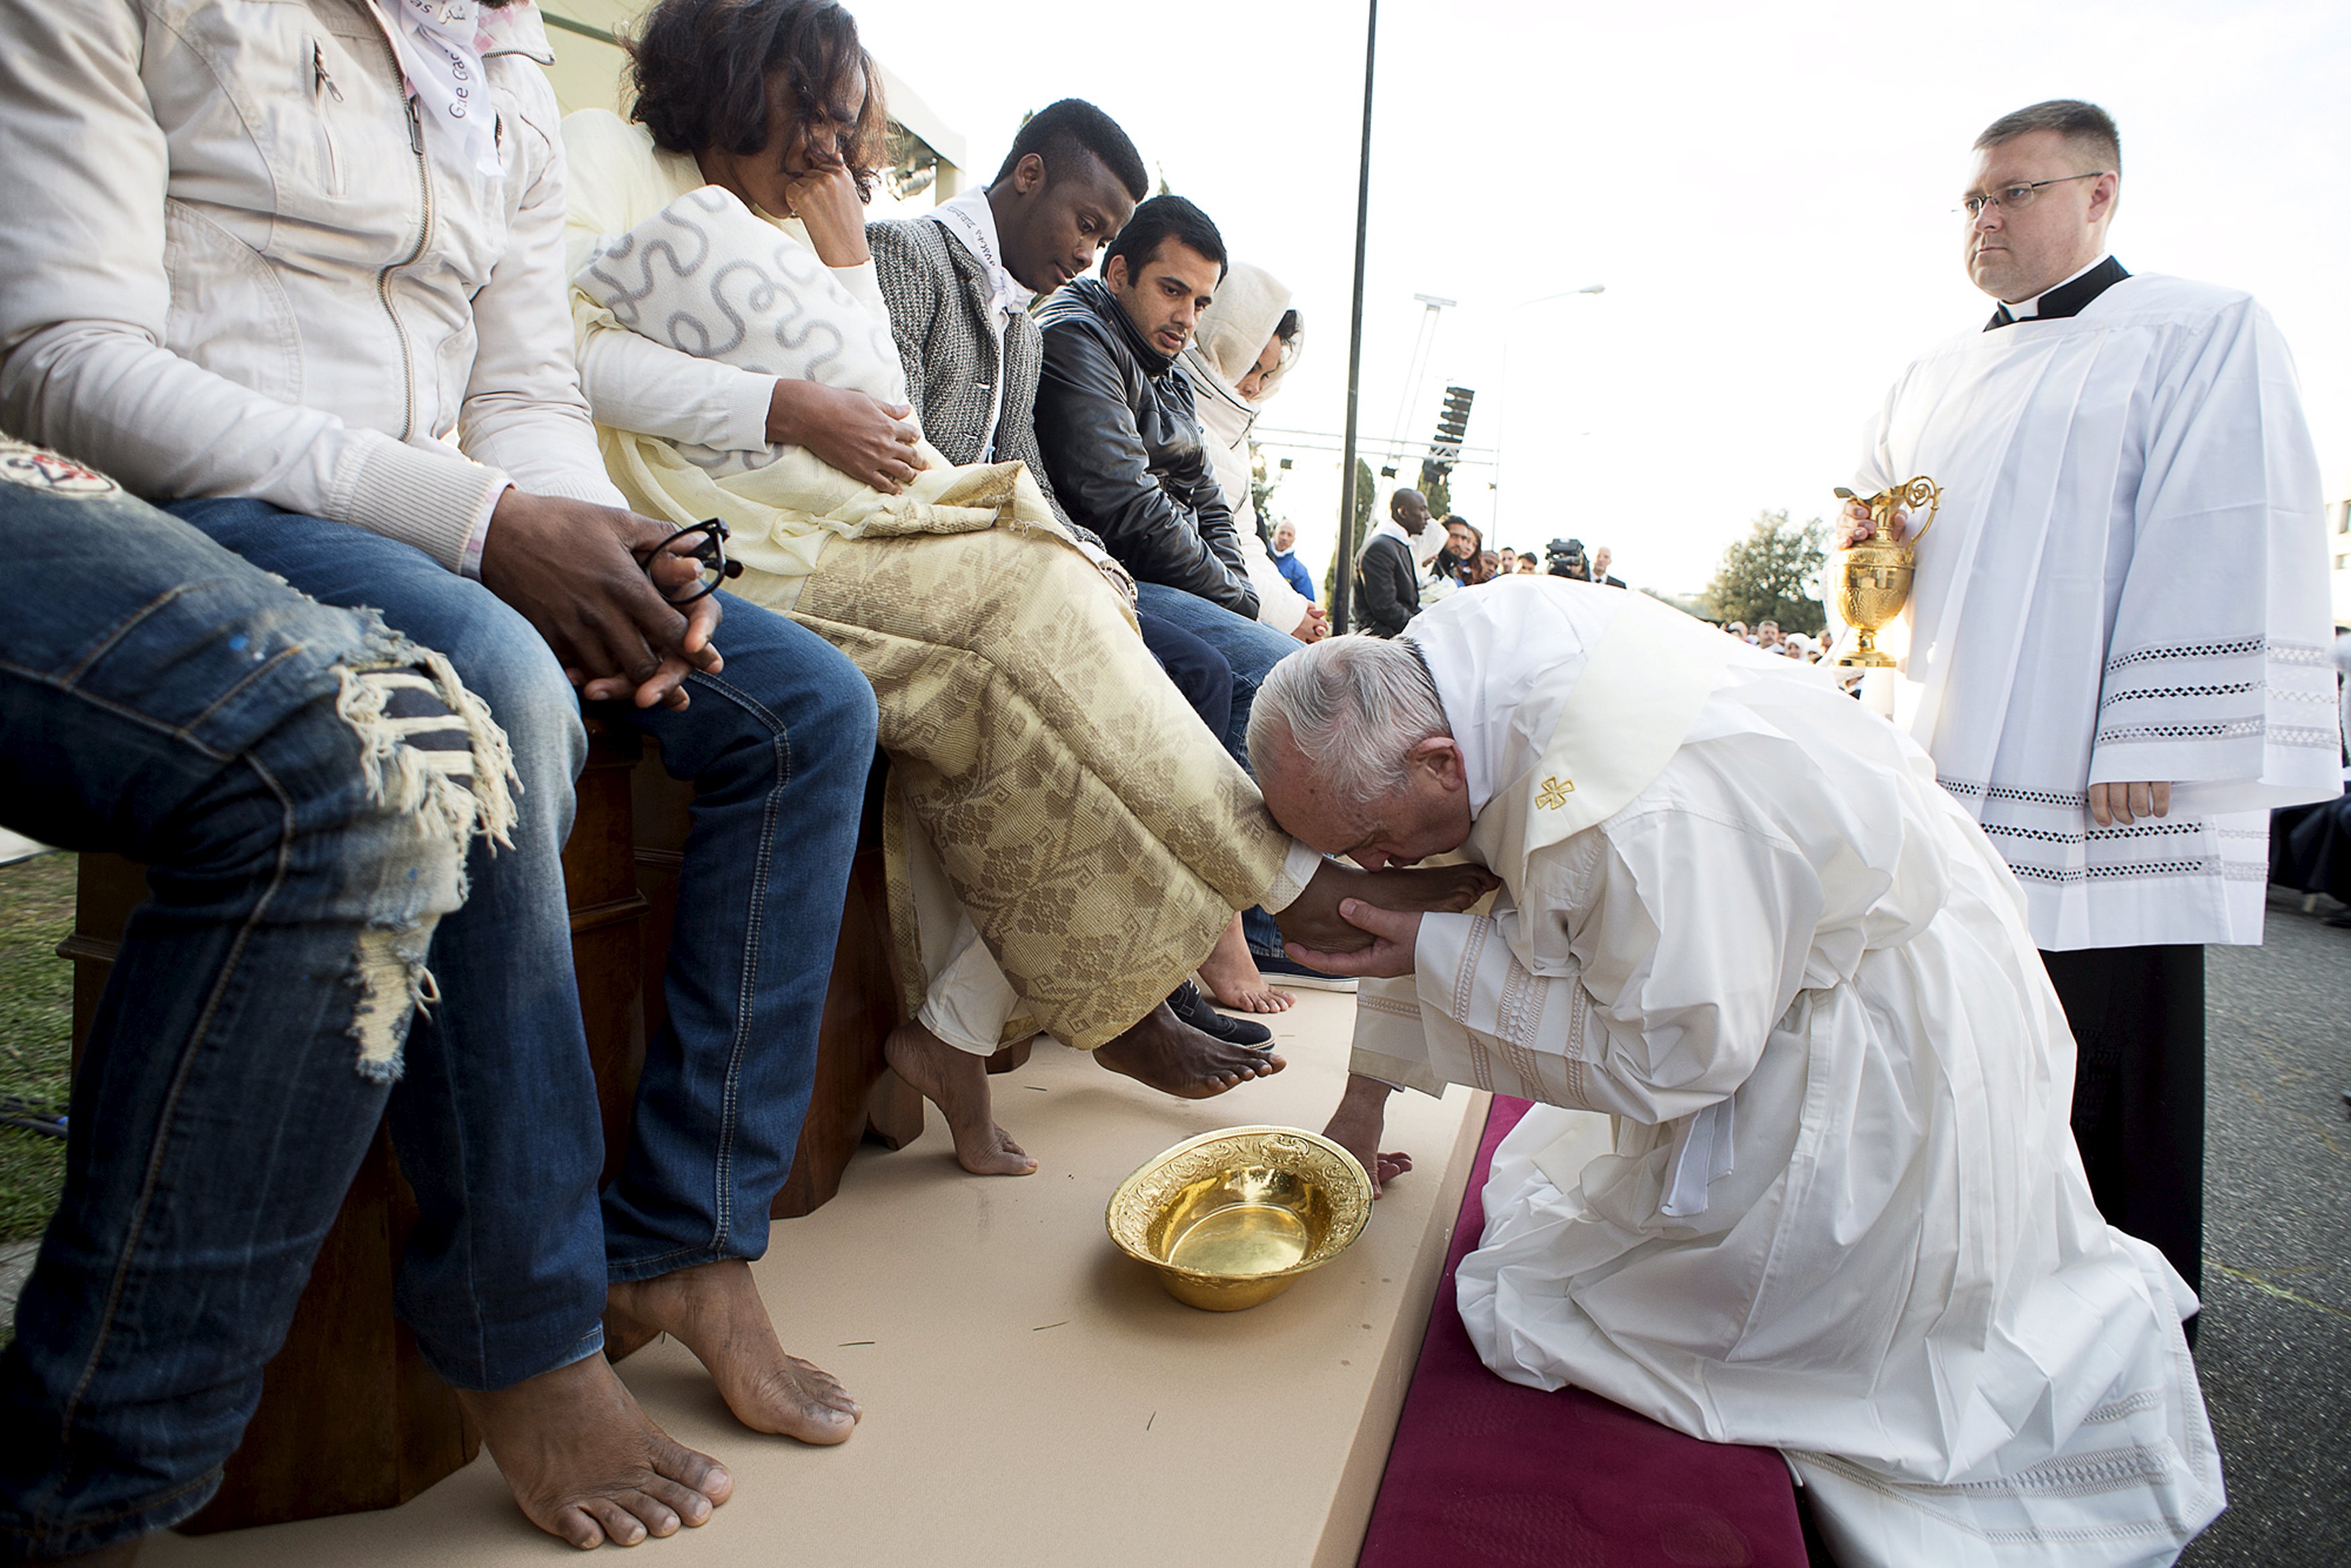 El papa Francisco lavó y besó los pies de refugiados (Fotos)